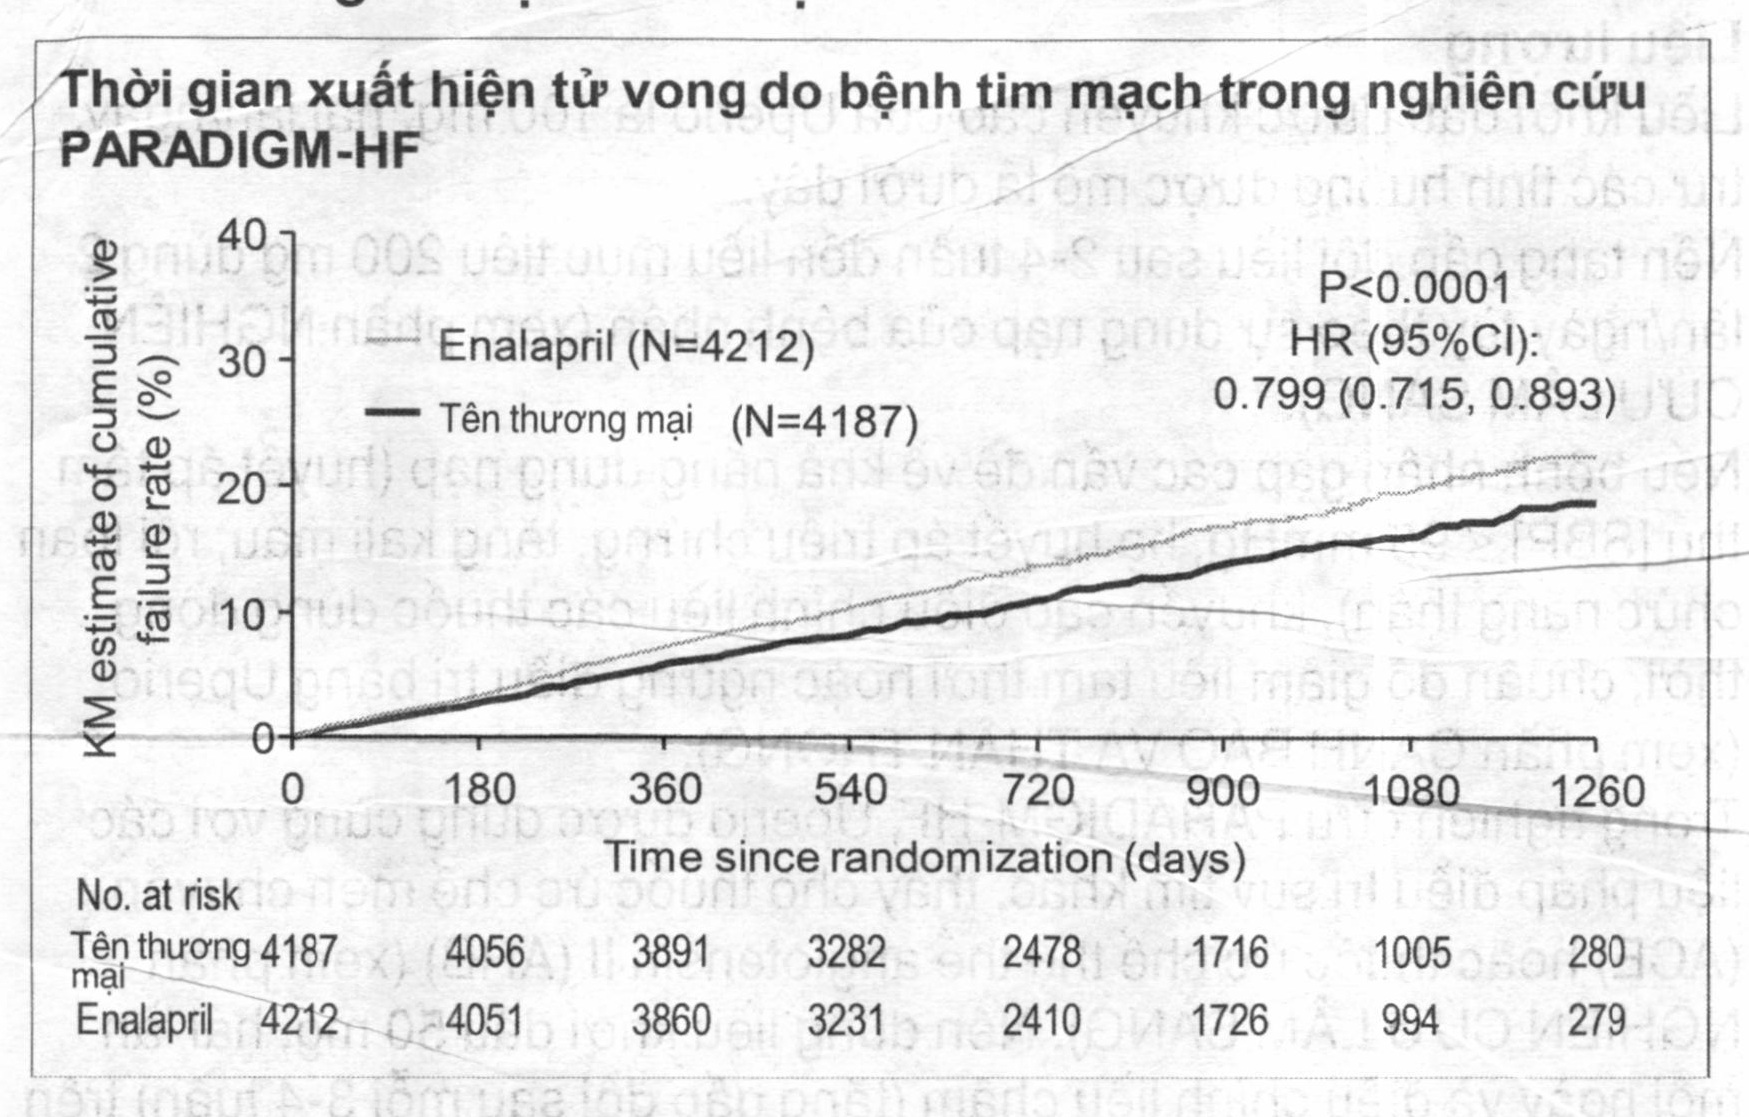 Thời gian xuất hiện tử vong do bệnh tim mạch trong nghiên cứu PARADIGM-HF